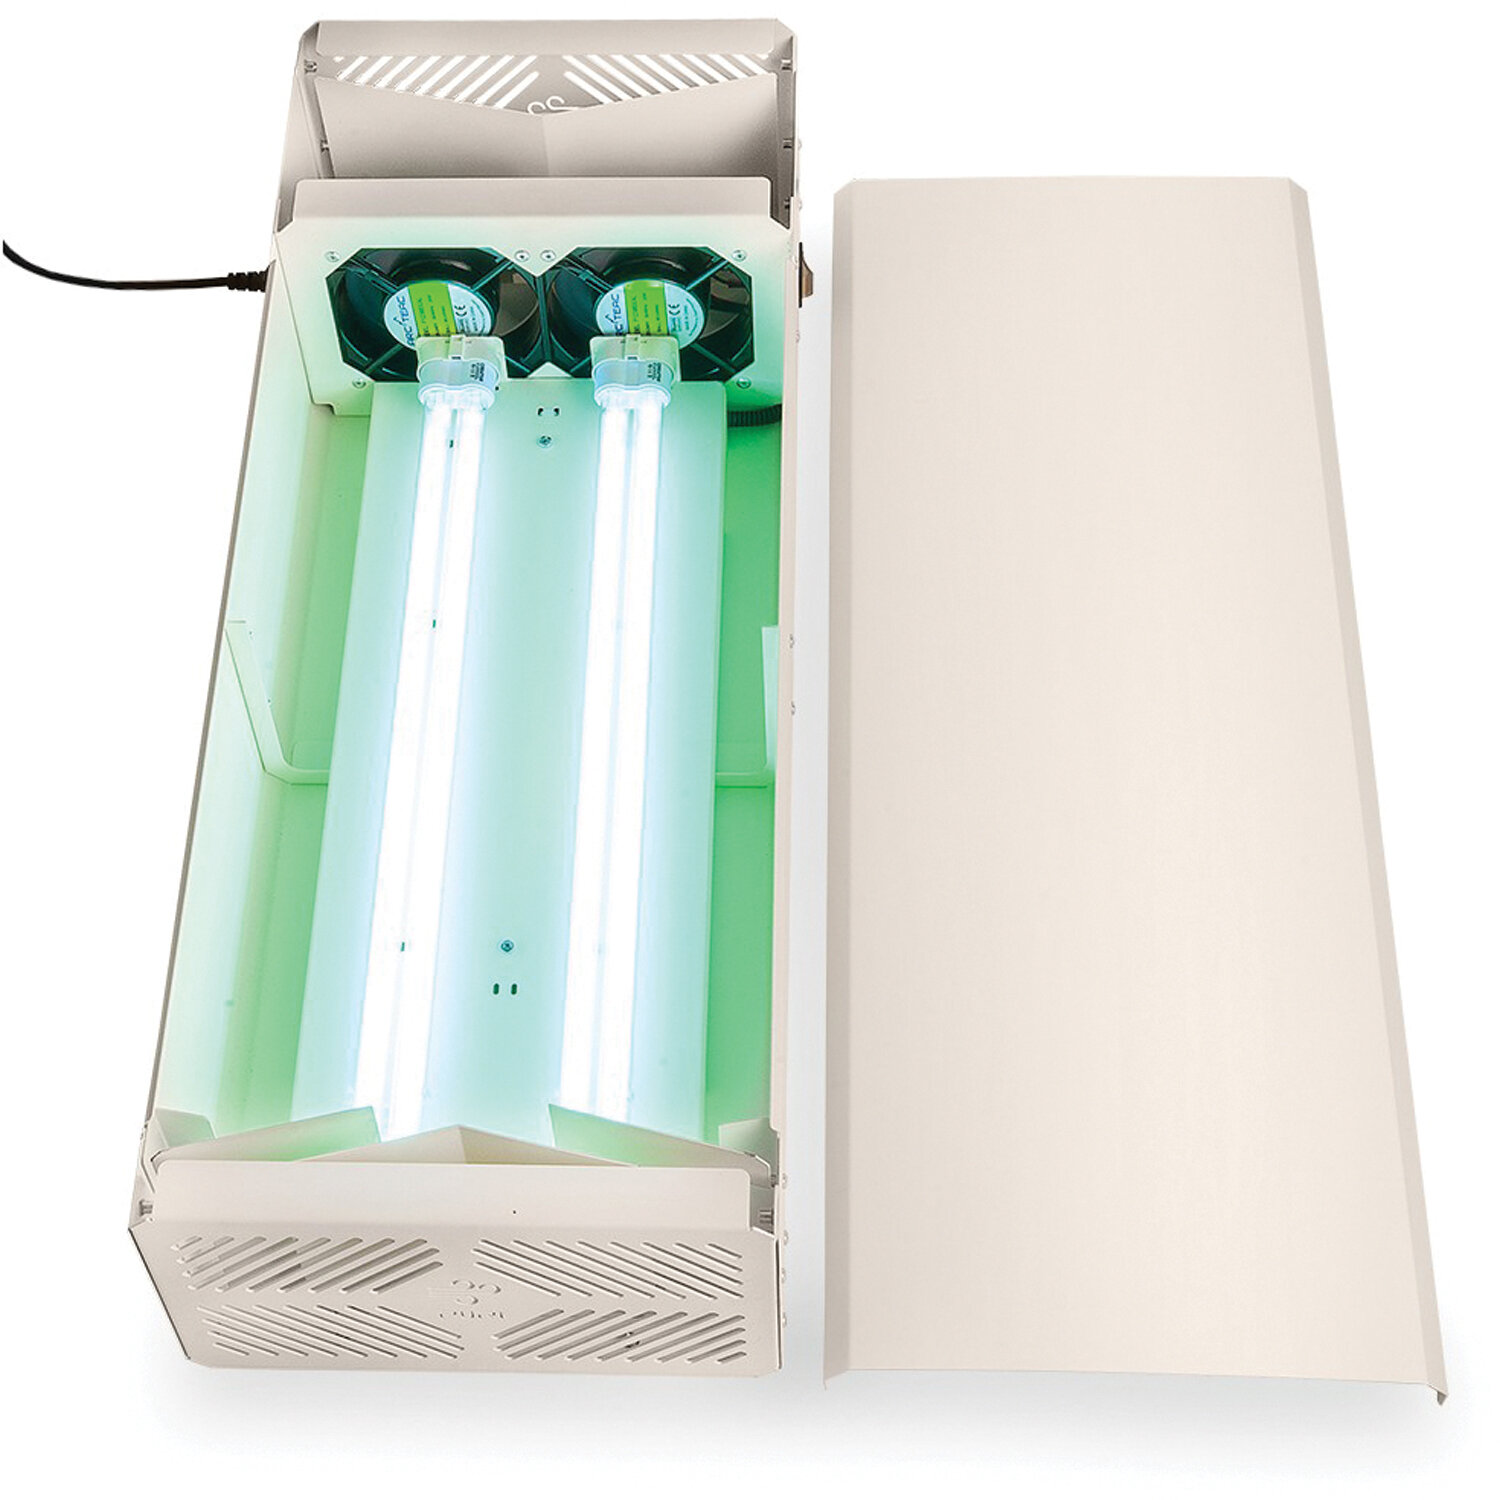 Рециркулятор бактерицидный PURI UV110W, УФ лампа 2х55 Вт, 240 м3/час